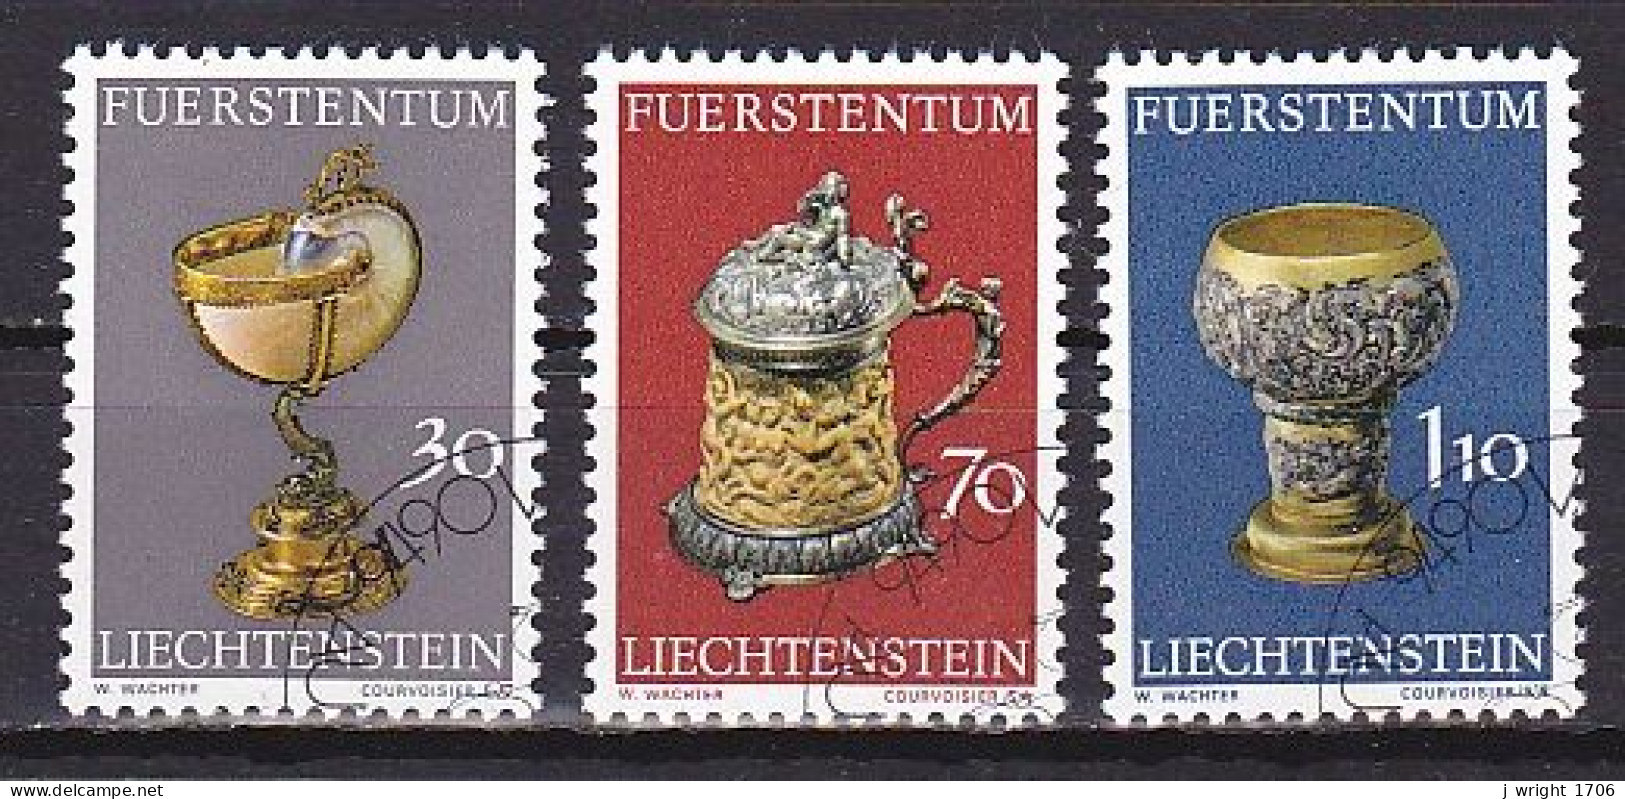 Liechtenstein, 1973, Prince's Collection Treasures 1st Series, Set, CTO - Gebruikt